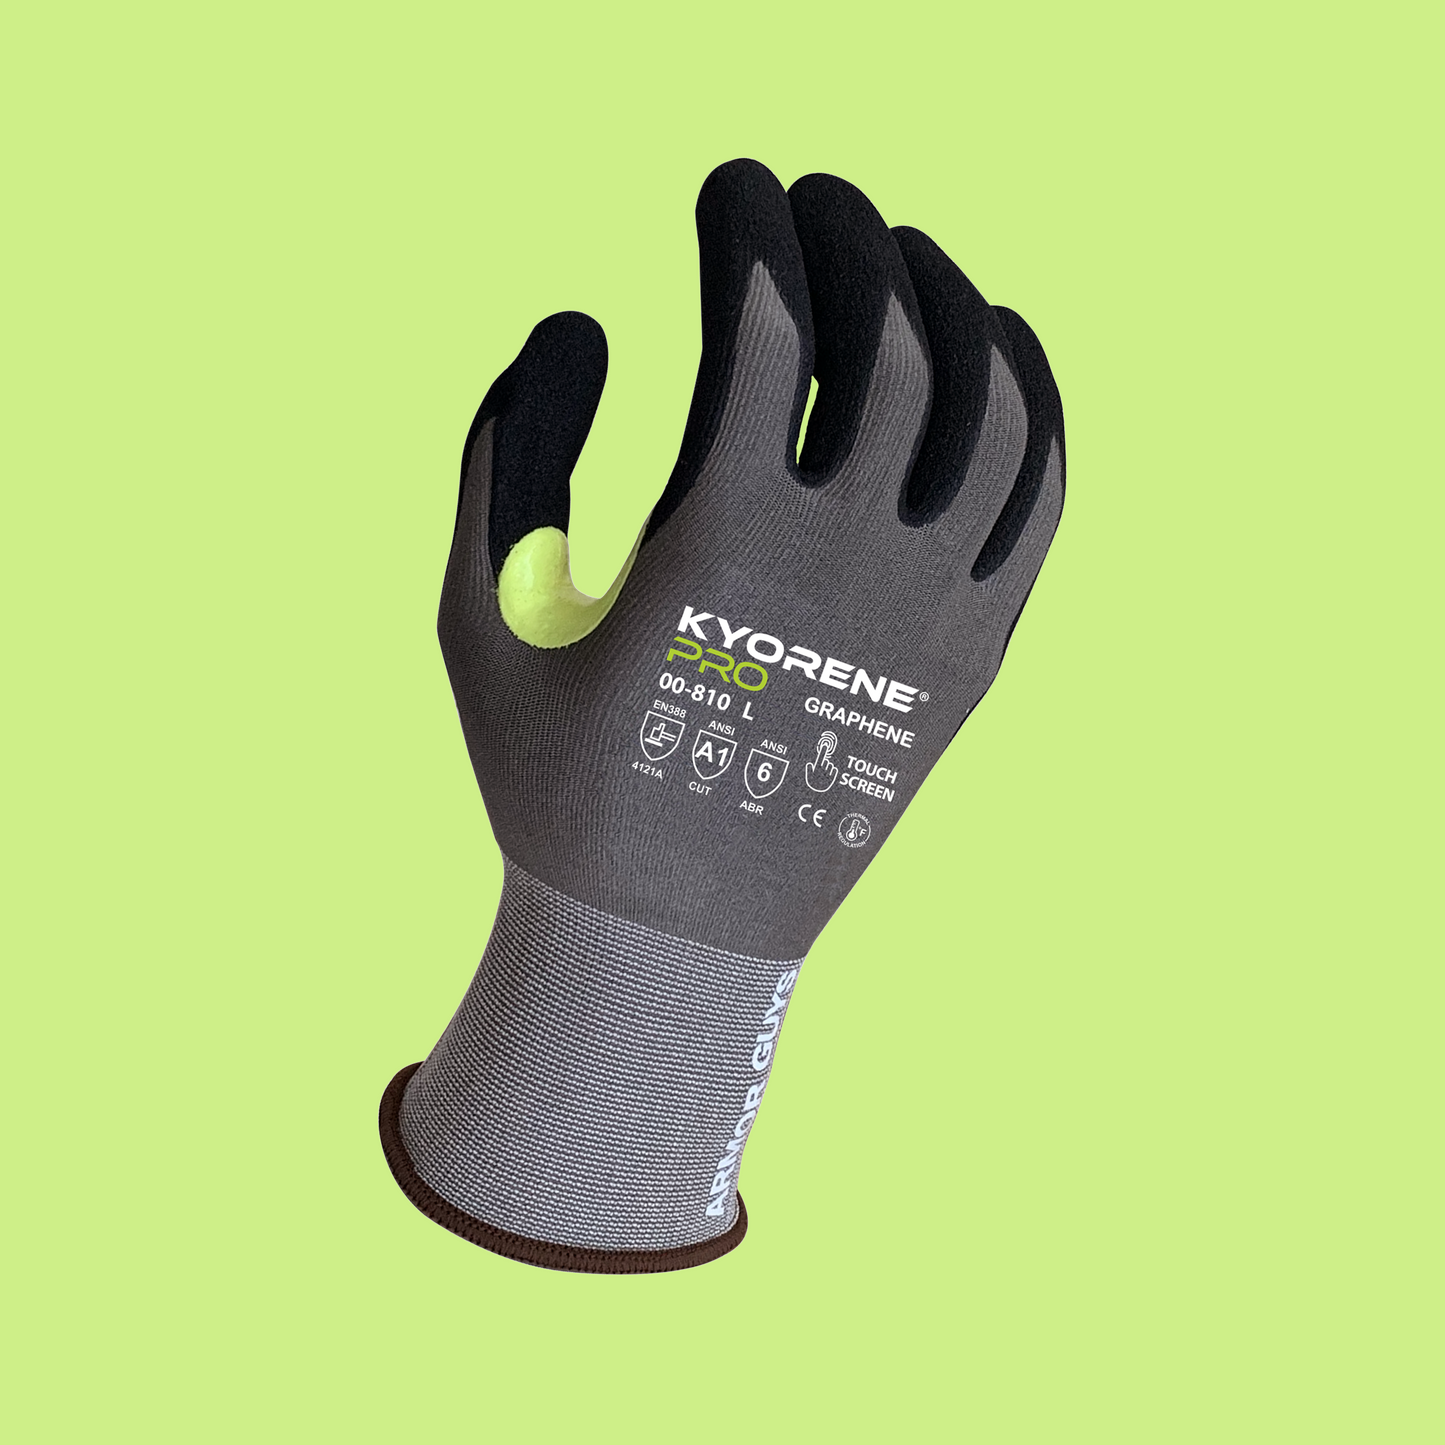 00-810 Kyorene® Pro Gloves